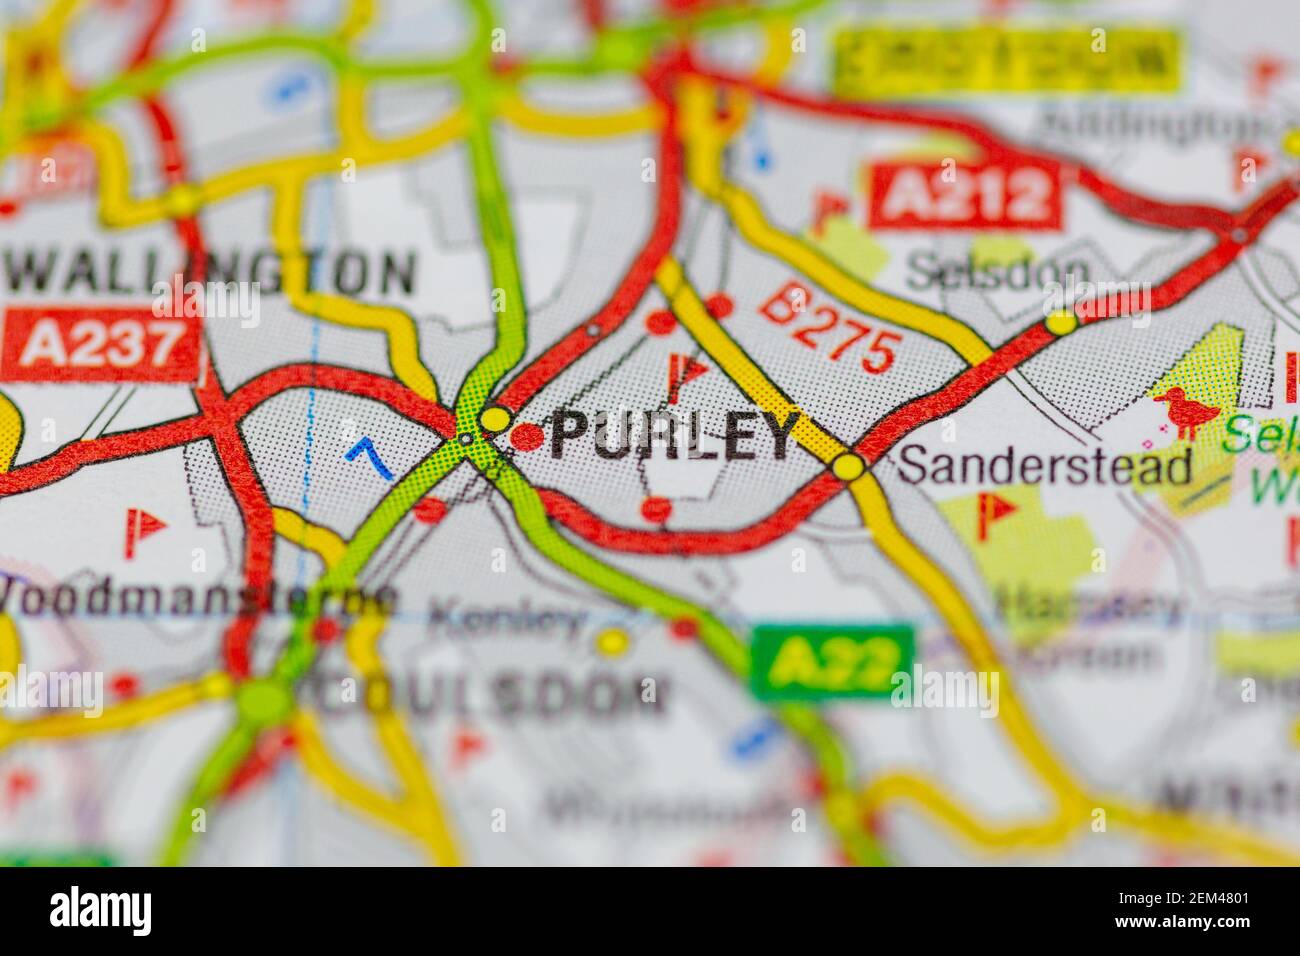 Purley mostrato su una mappa stradale o una mappa geografica Foto Stock